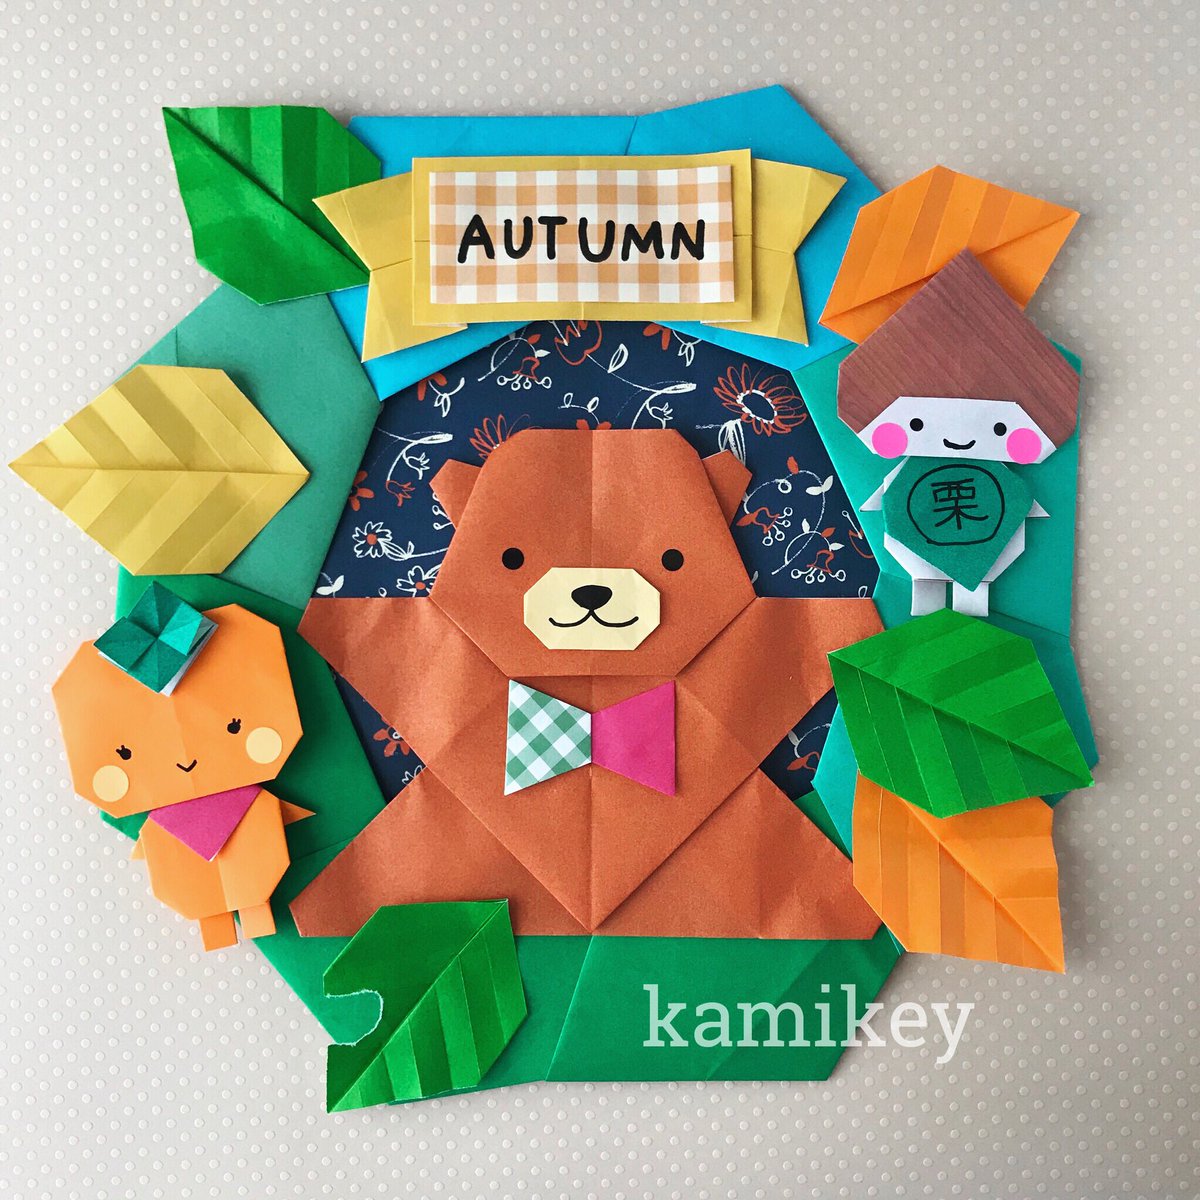 折り紙作家カミキィ 本 カミキィの季節のおりがみ 発売中 新作 バンザイくまさん の動画ができました 秋の飾りに9月 11月まで飾れます くりぼう かきひめ の出番もやって来ました 折り紙 バンザイくまさん Origami Bear カミキィ